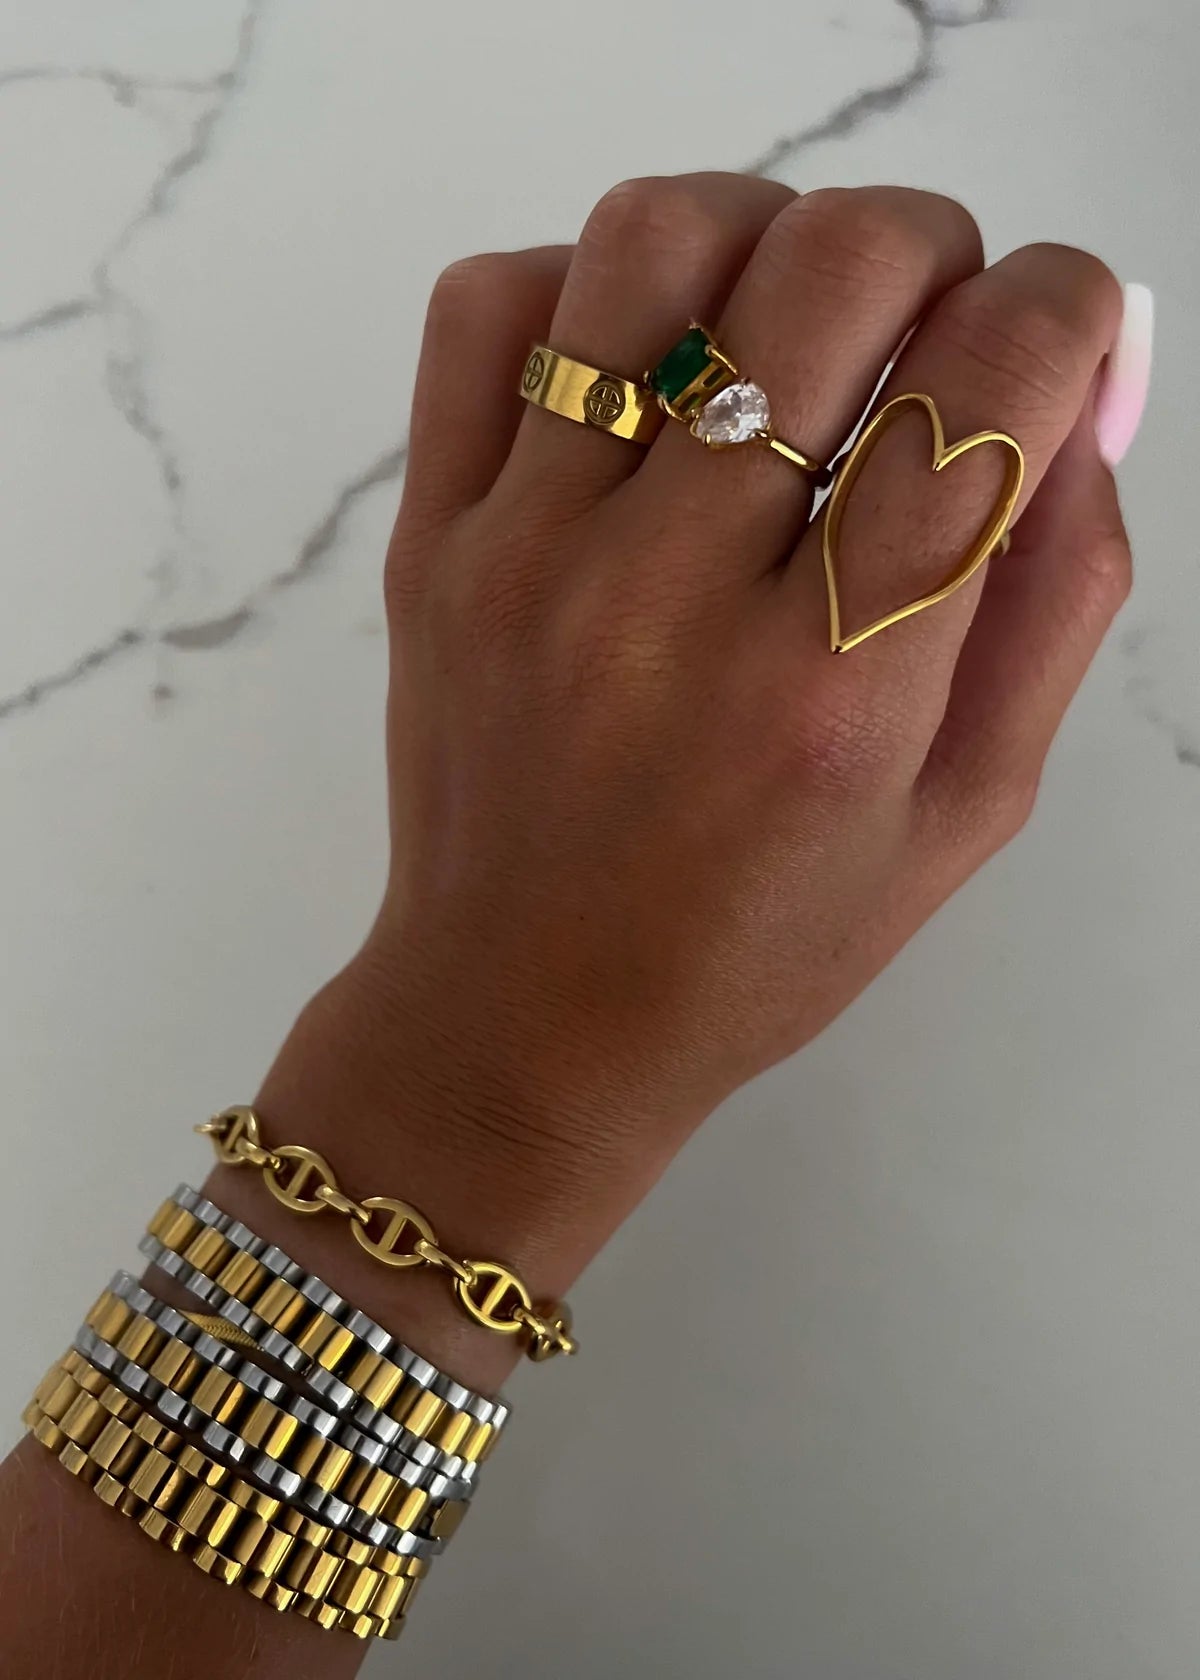 Gold Heart Ring (ChanSutt)